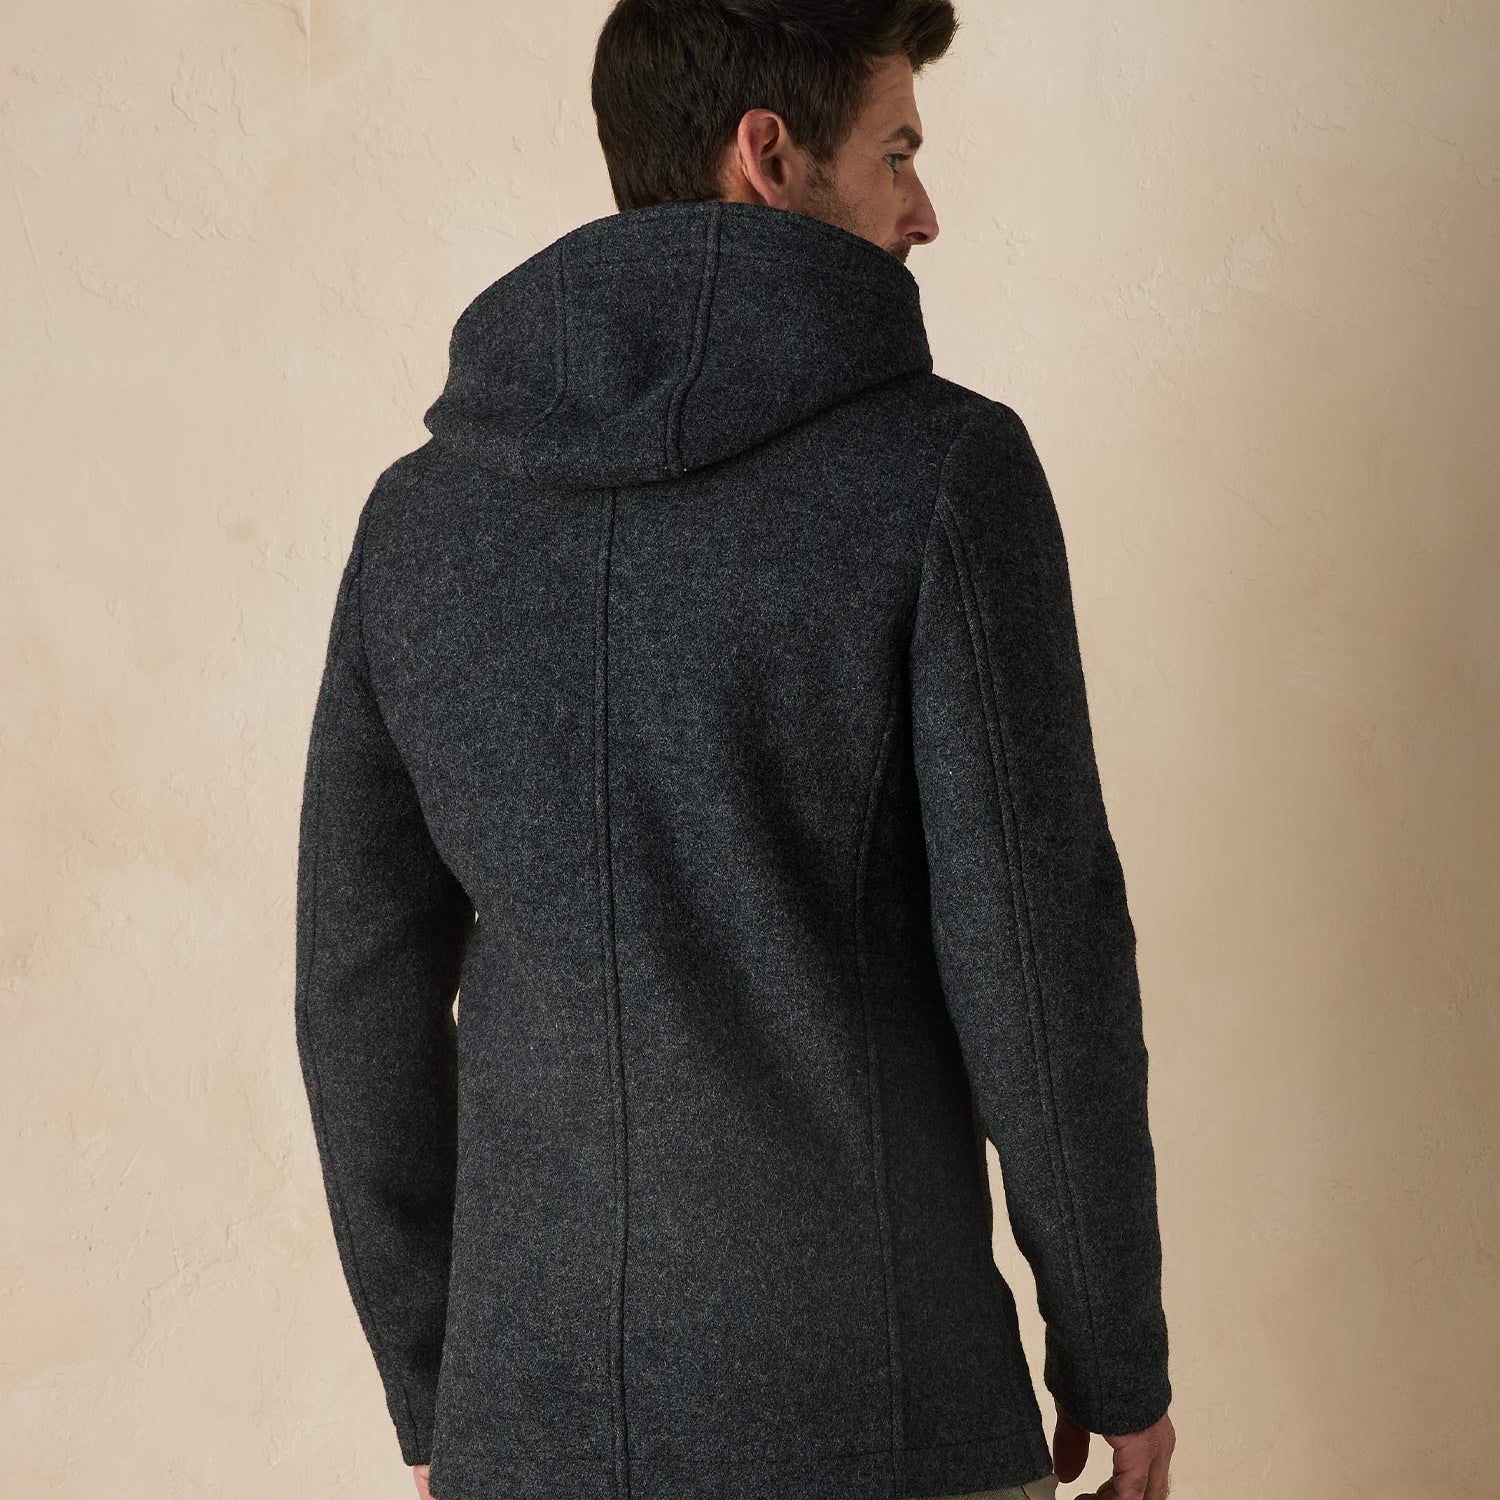 Normal Brand Balboa City Peacoat - Grey - 4 - Tops - Coats & Jackets